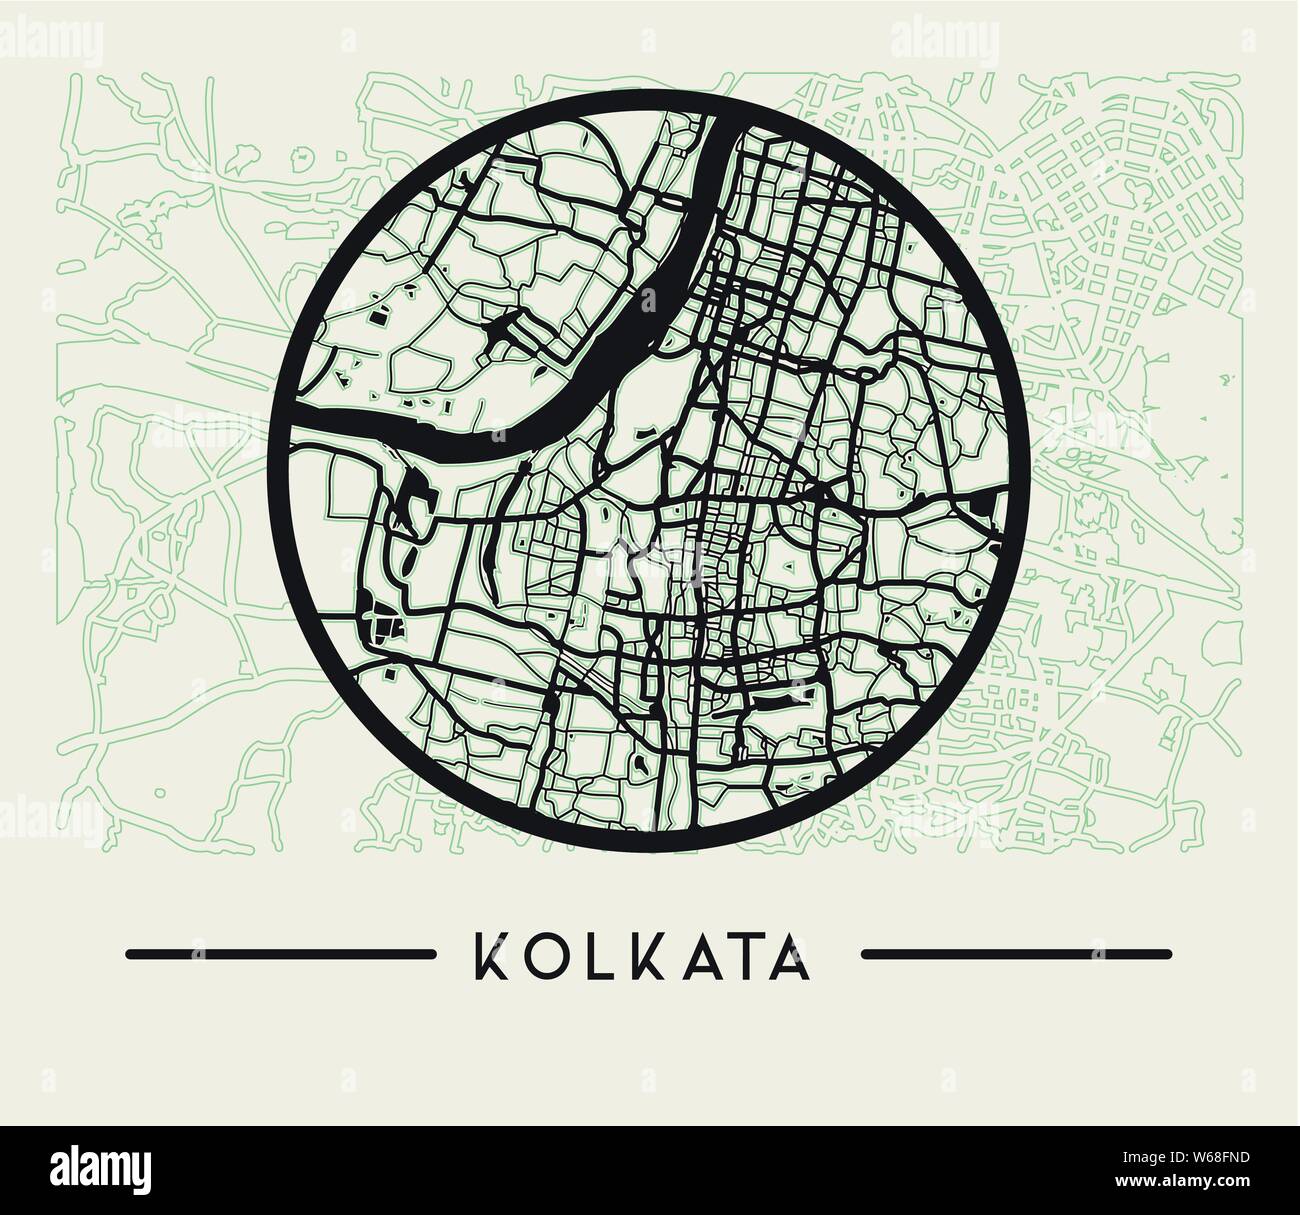 Abstract Kolkata City Map - Illustration as EPS 10 File Stock Vector